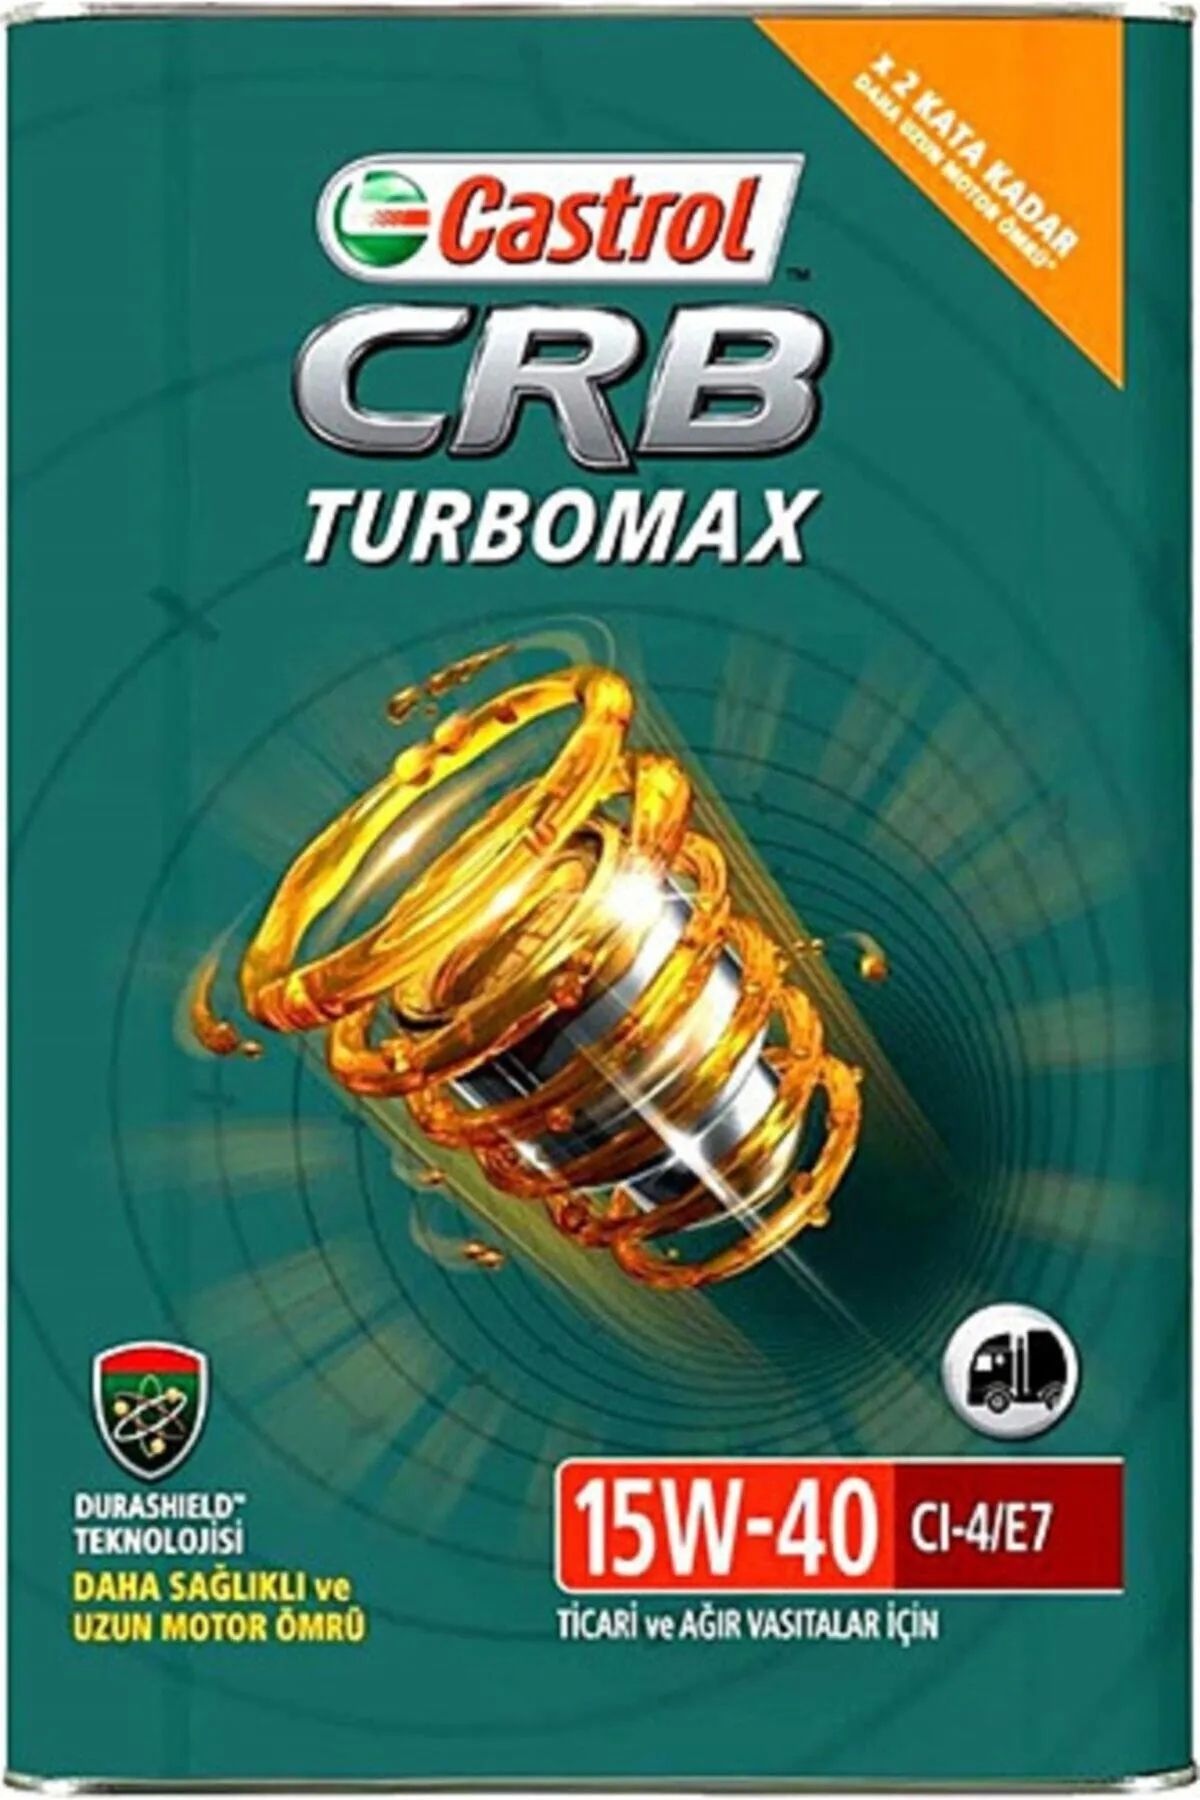 Castrol Crb Turbomax 15w- 40 Cı-4/e7 Motor Yağı 16 Kg